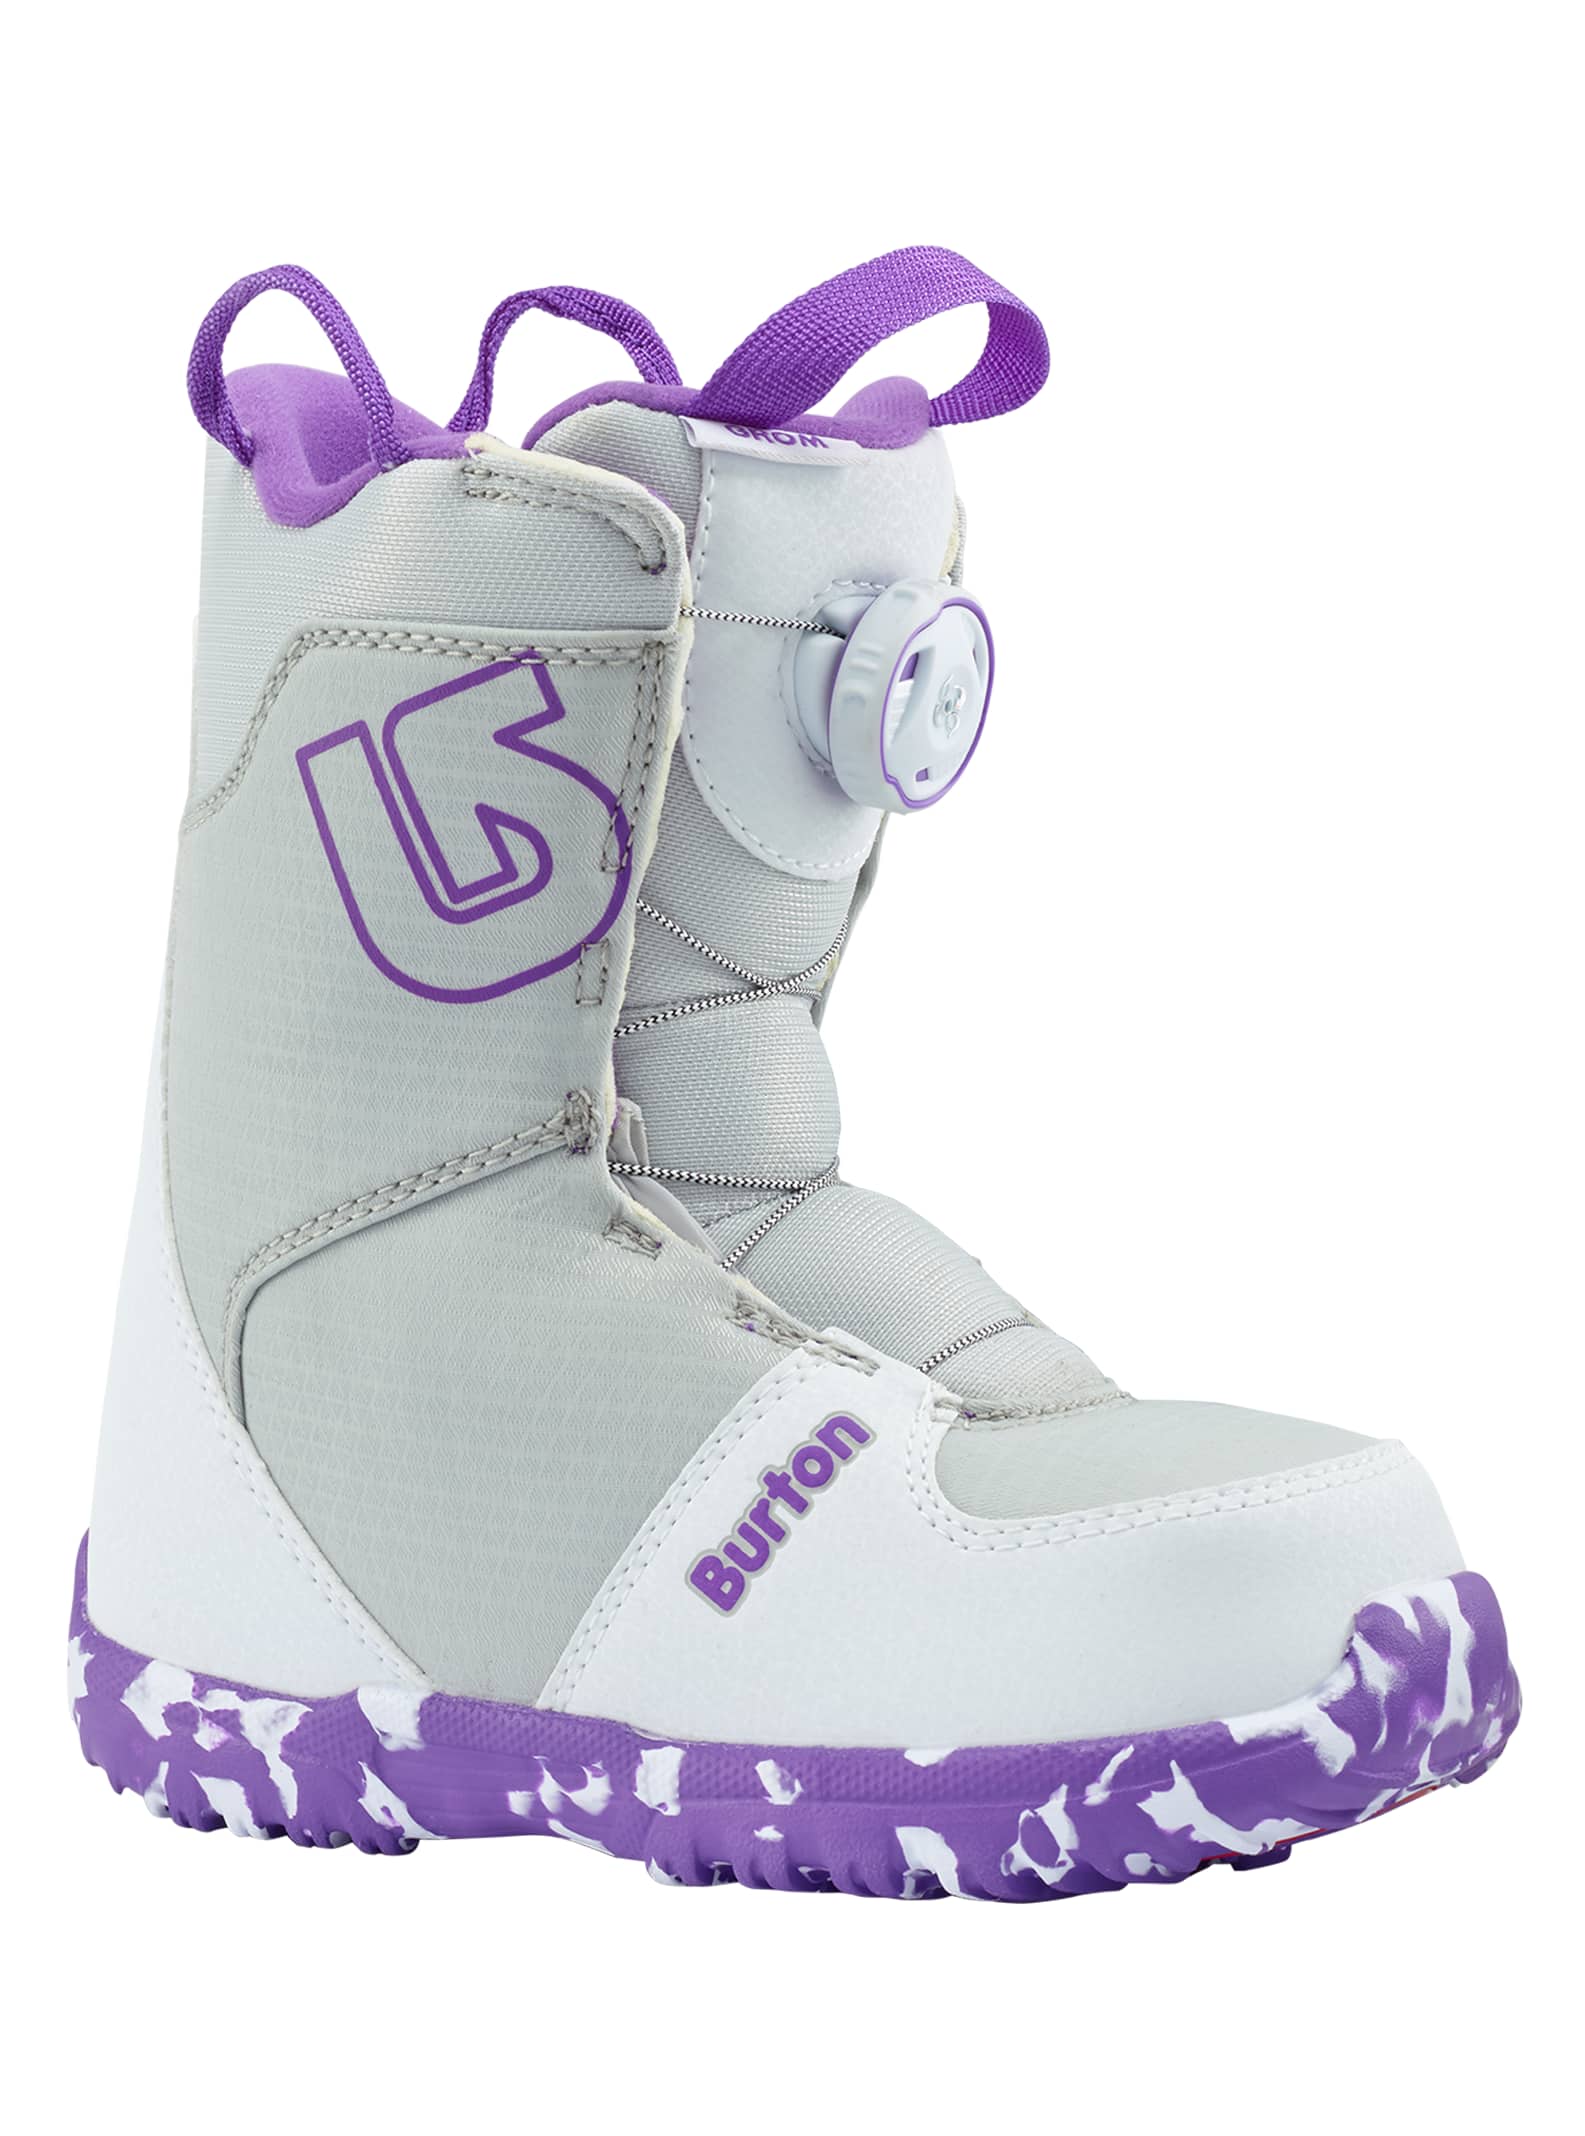 Kids' Burton Grom Boa® Snowboard Boot